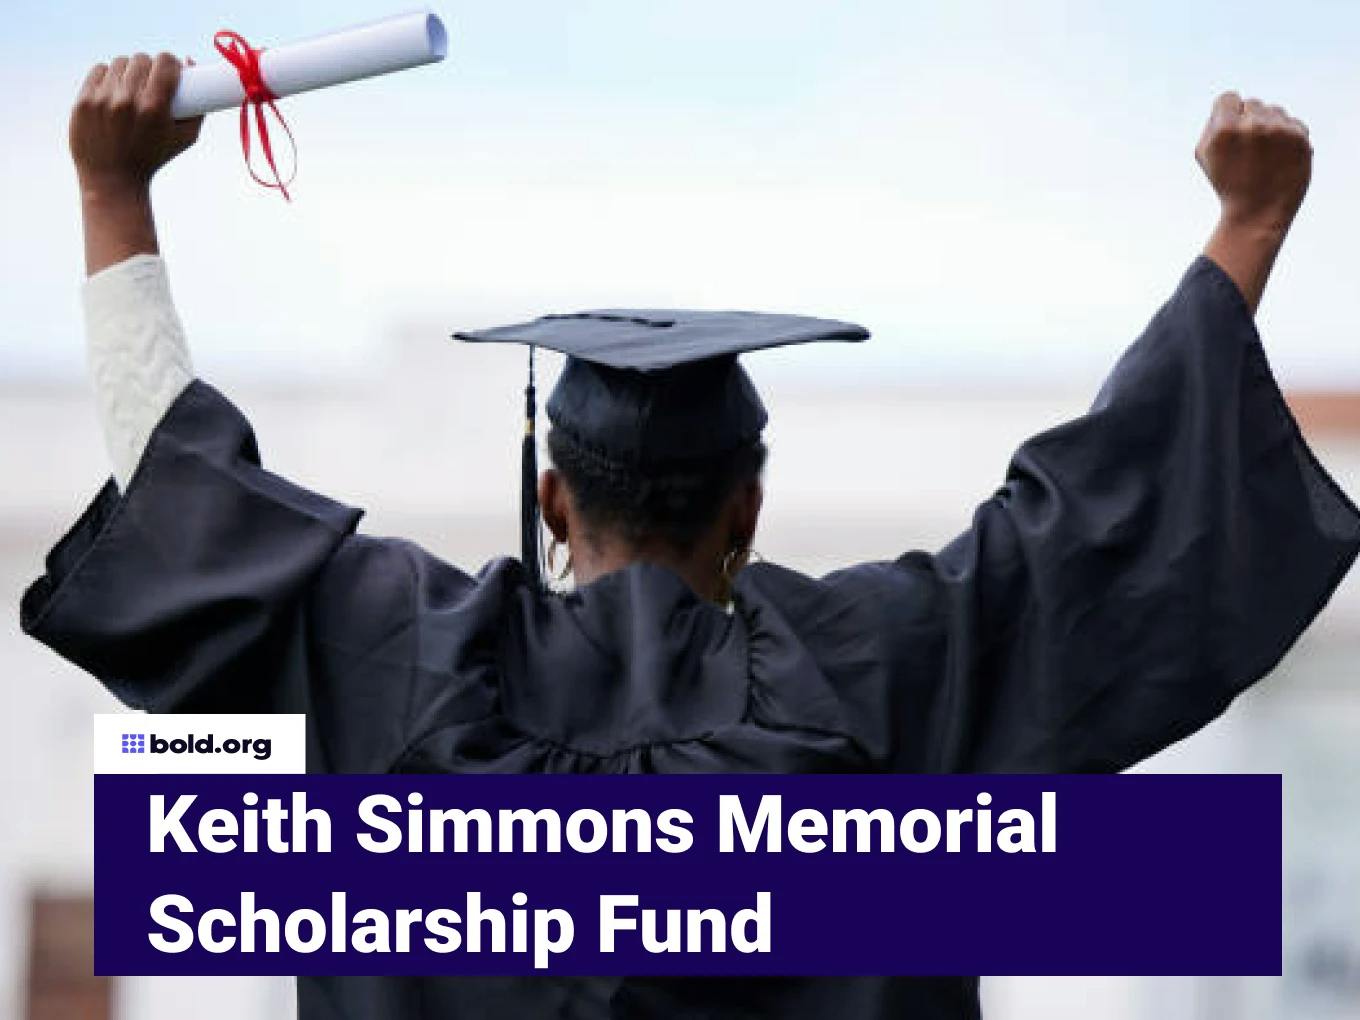 Keith Simmons Memorial Scholarship Fund